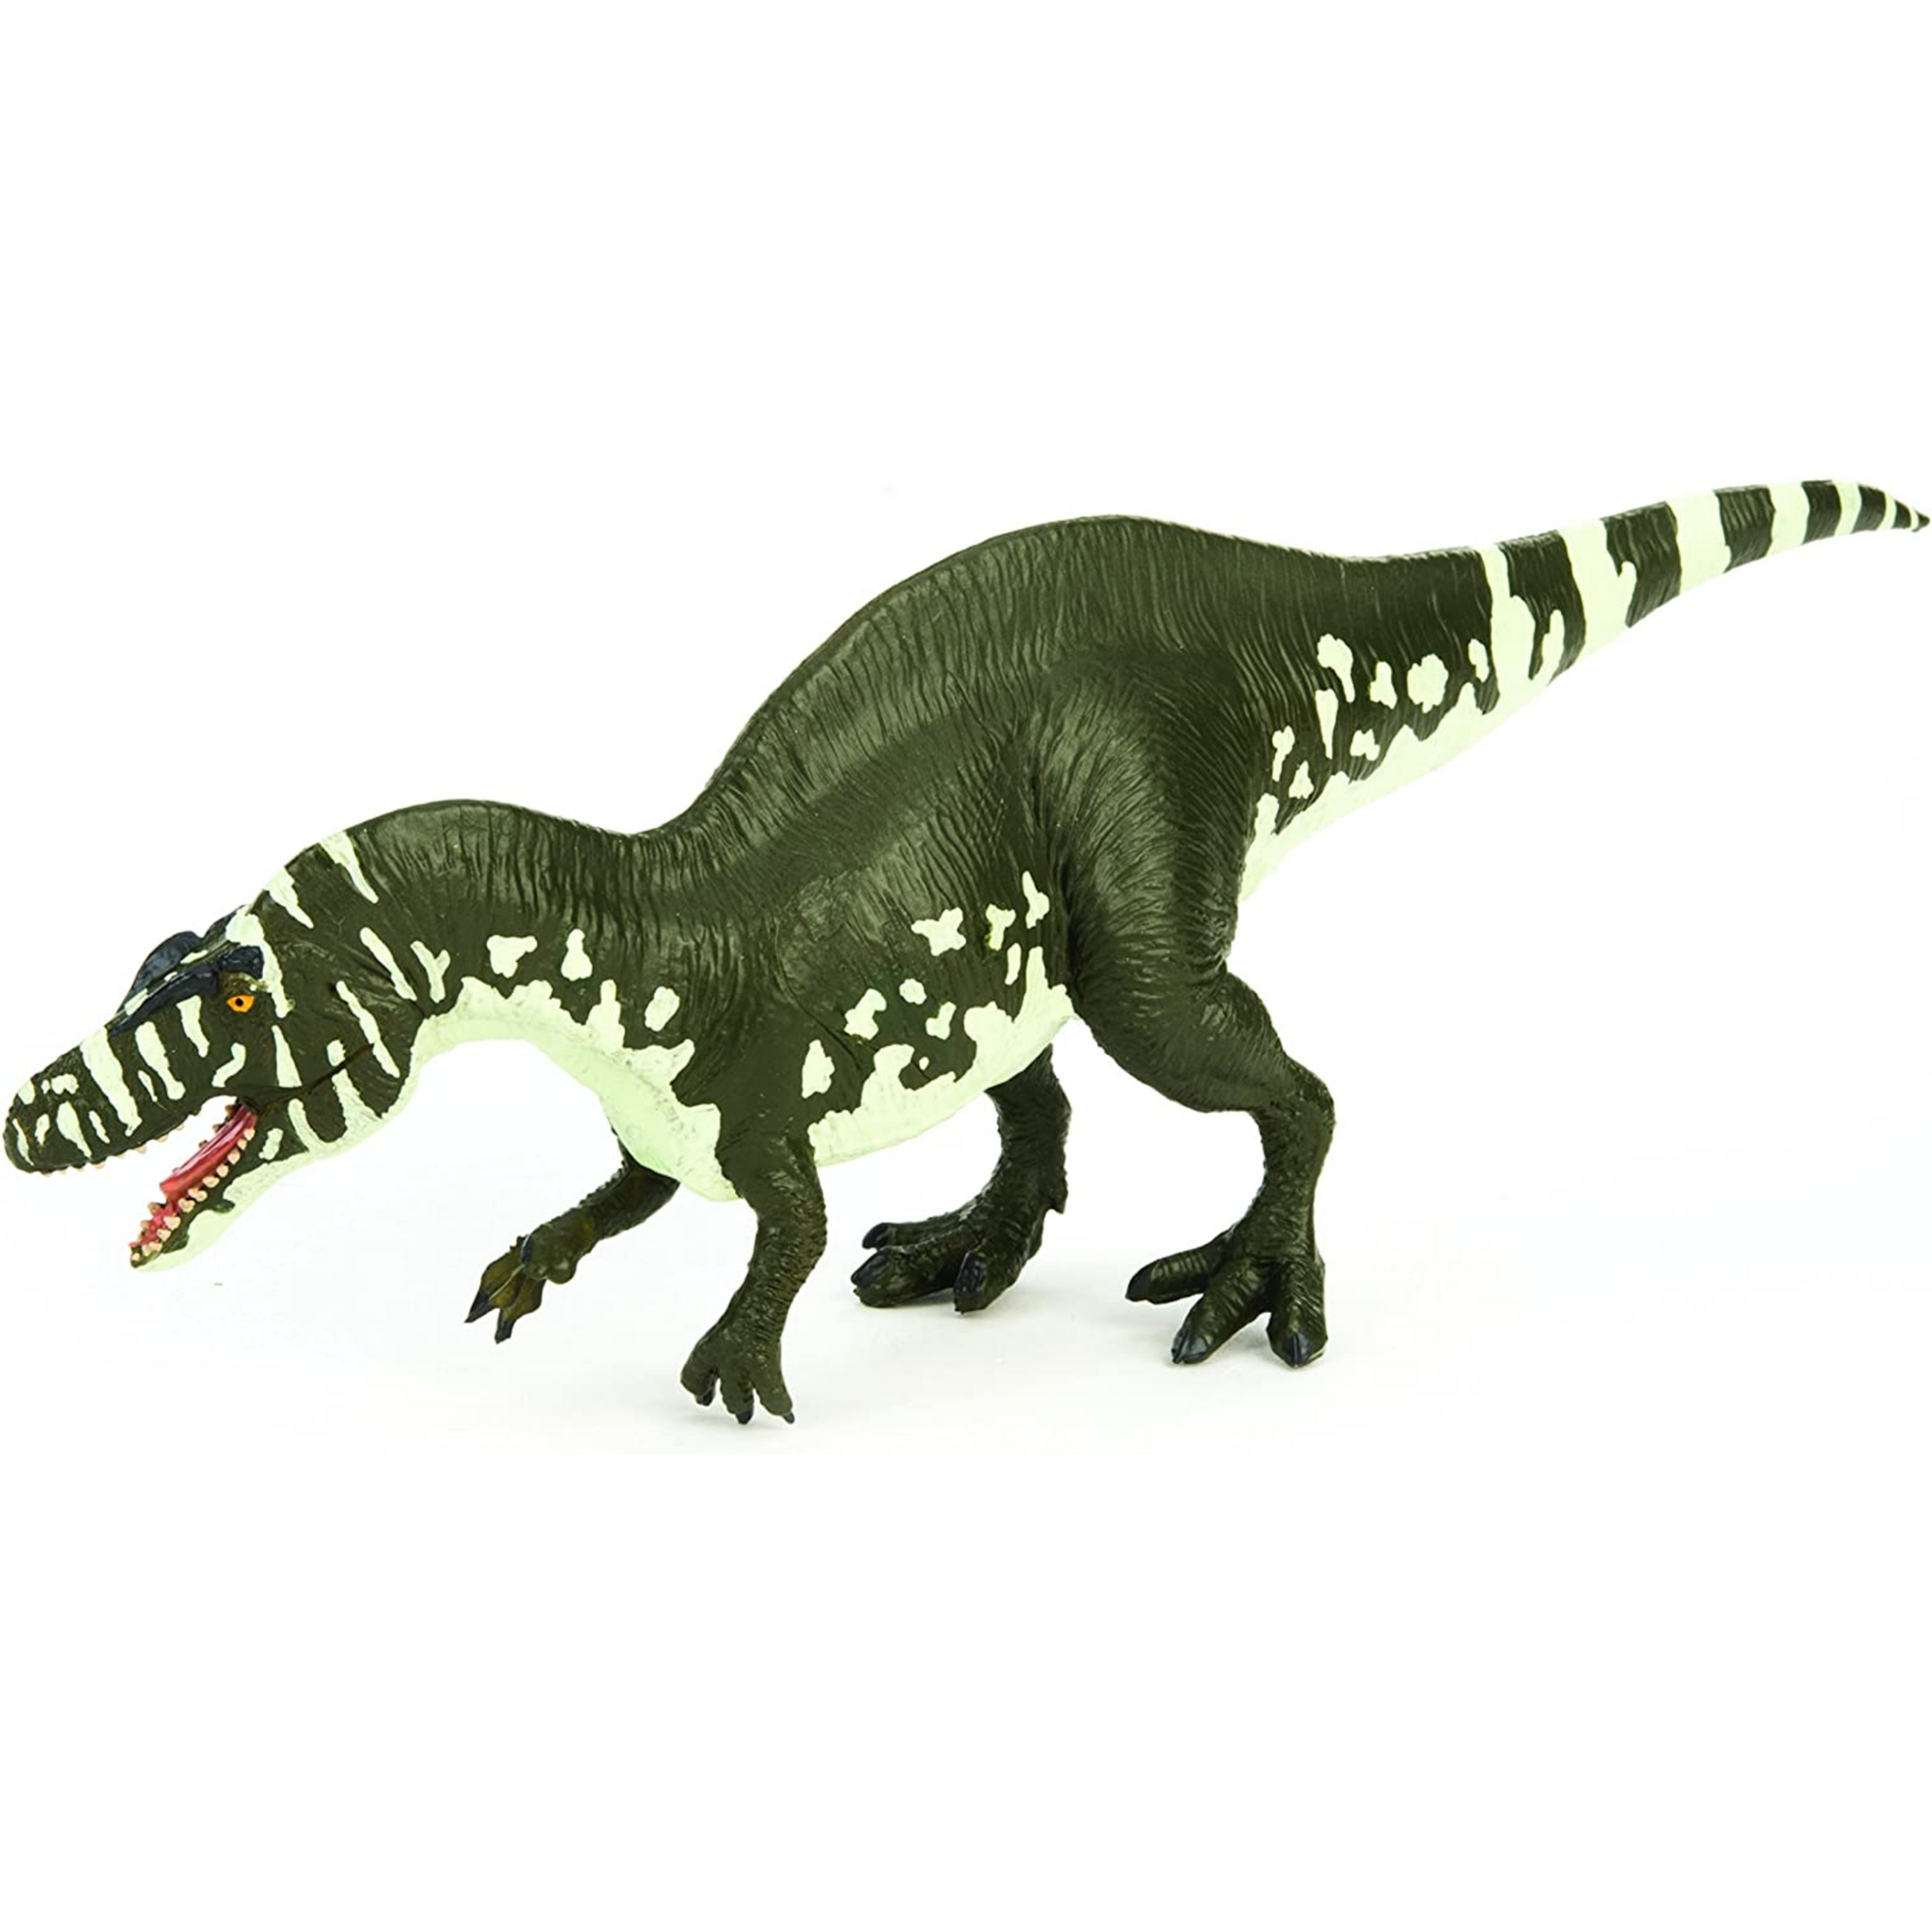 Dinosaurio Acrocanthosaurus Atokensis